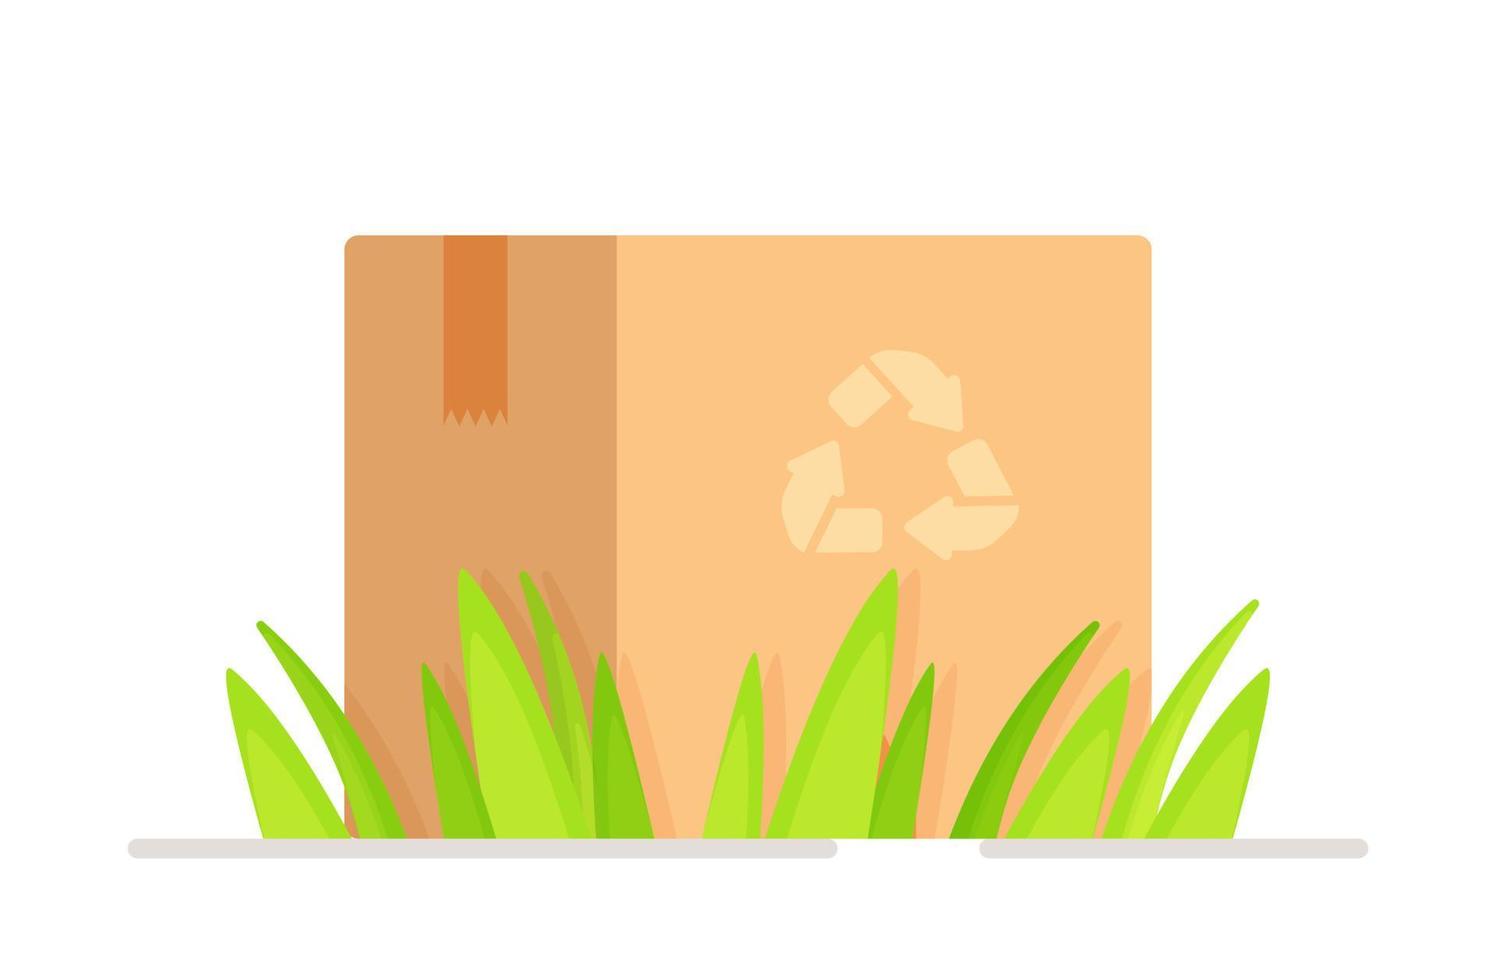 Vektor-Illustration von Recycling-Box im Gras auf einem weißen Hintergrund stehen. Recycling-Box-Konzept. vektor